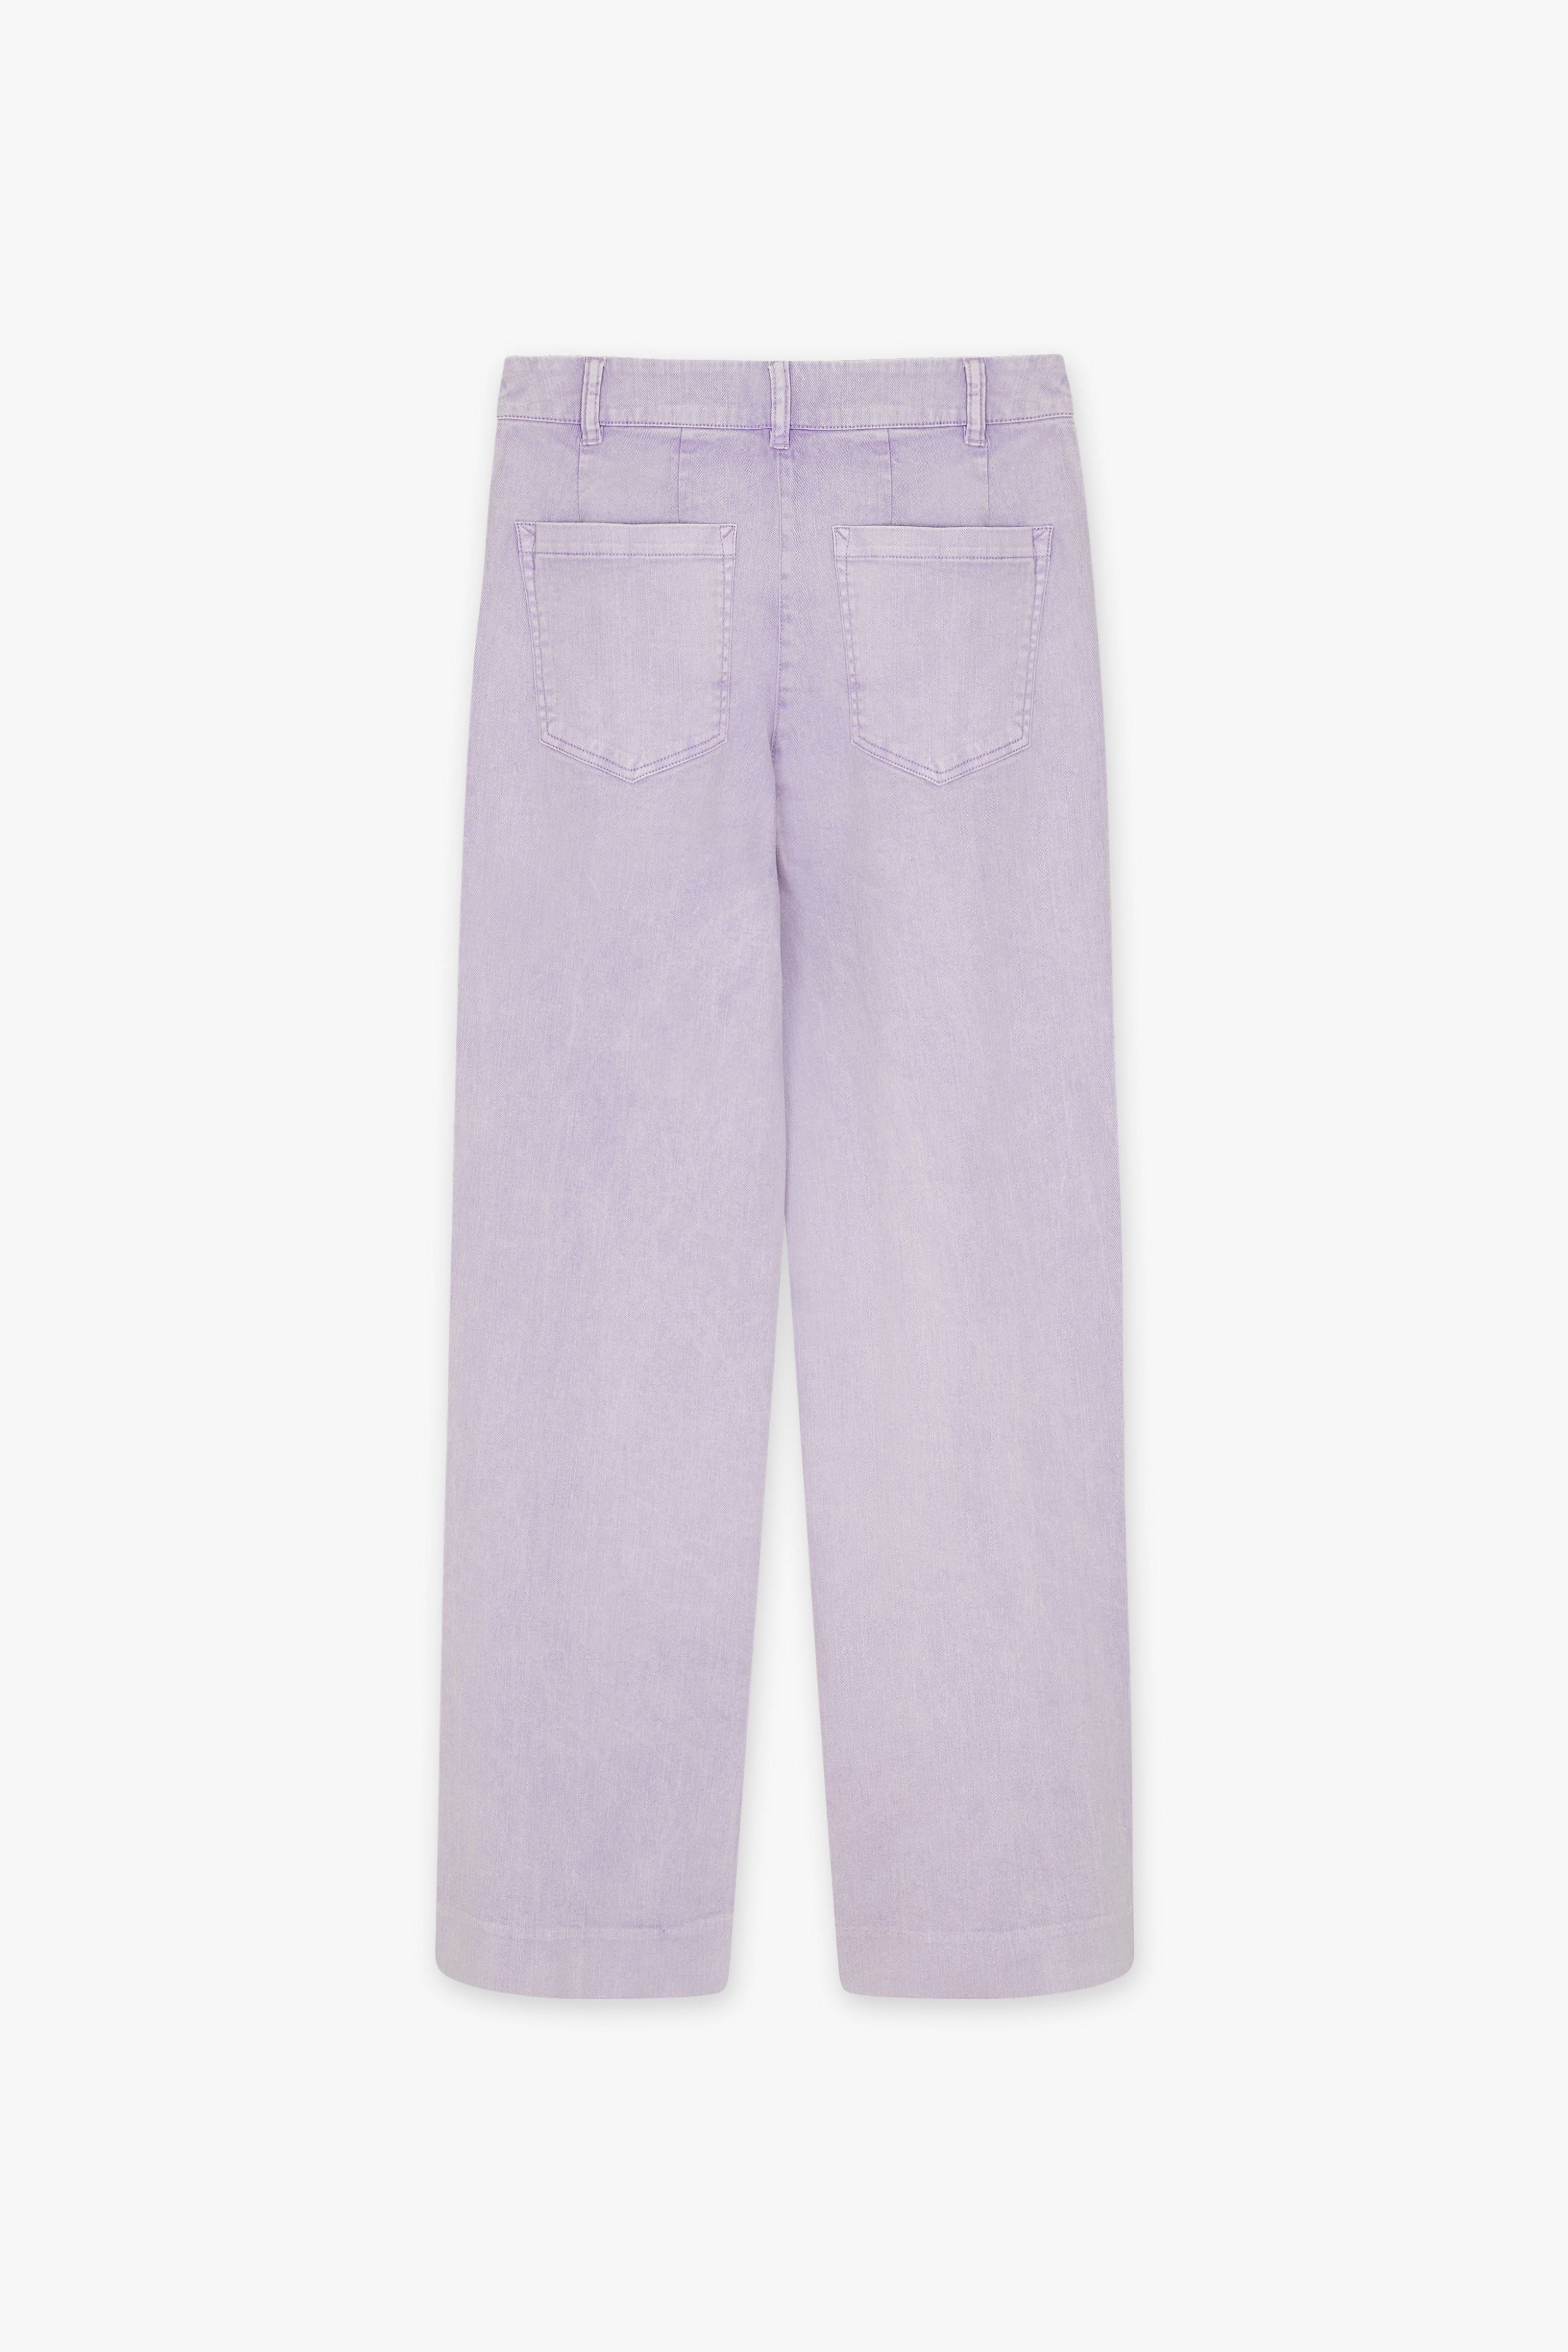 CKS Dames - RODA - Lange Jeans - Violett